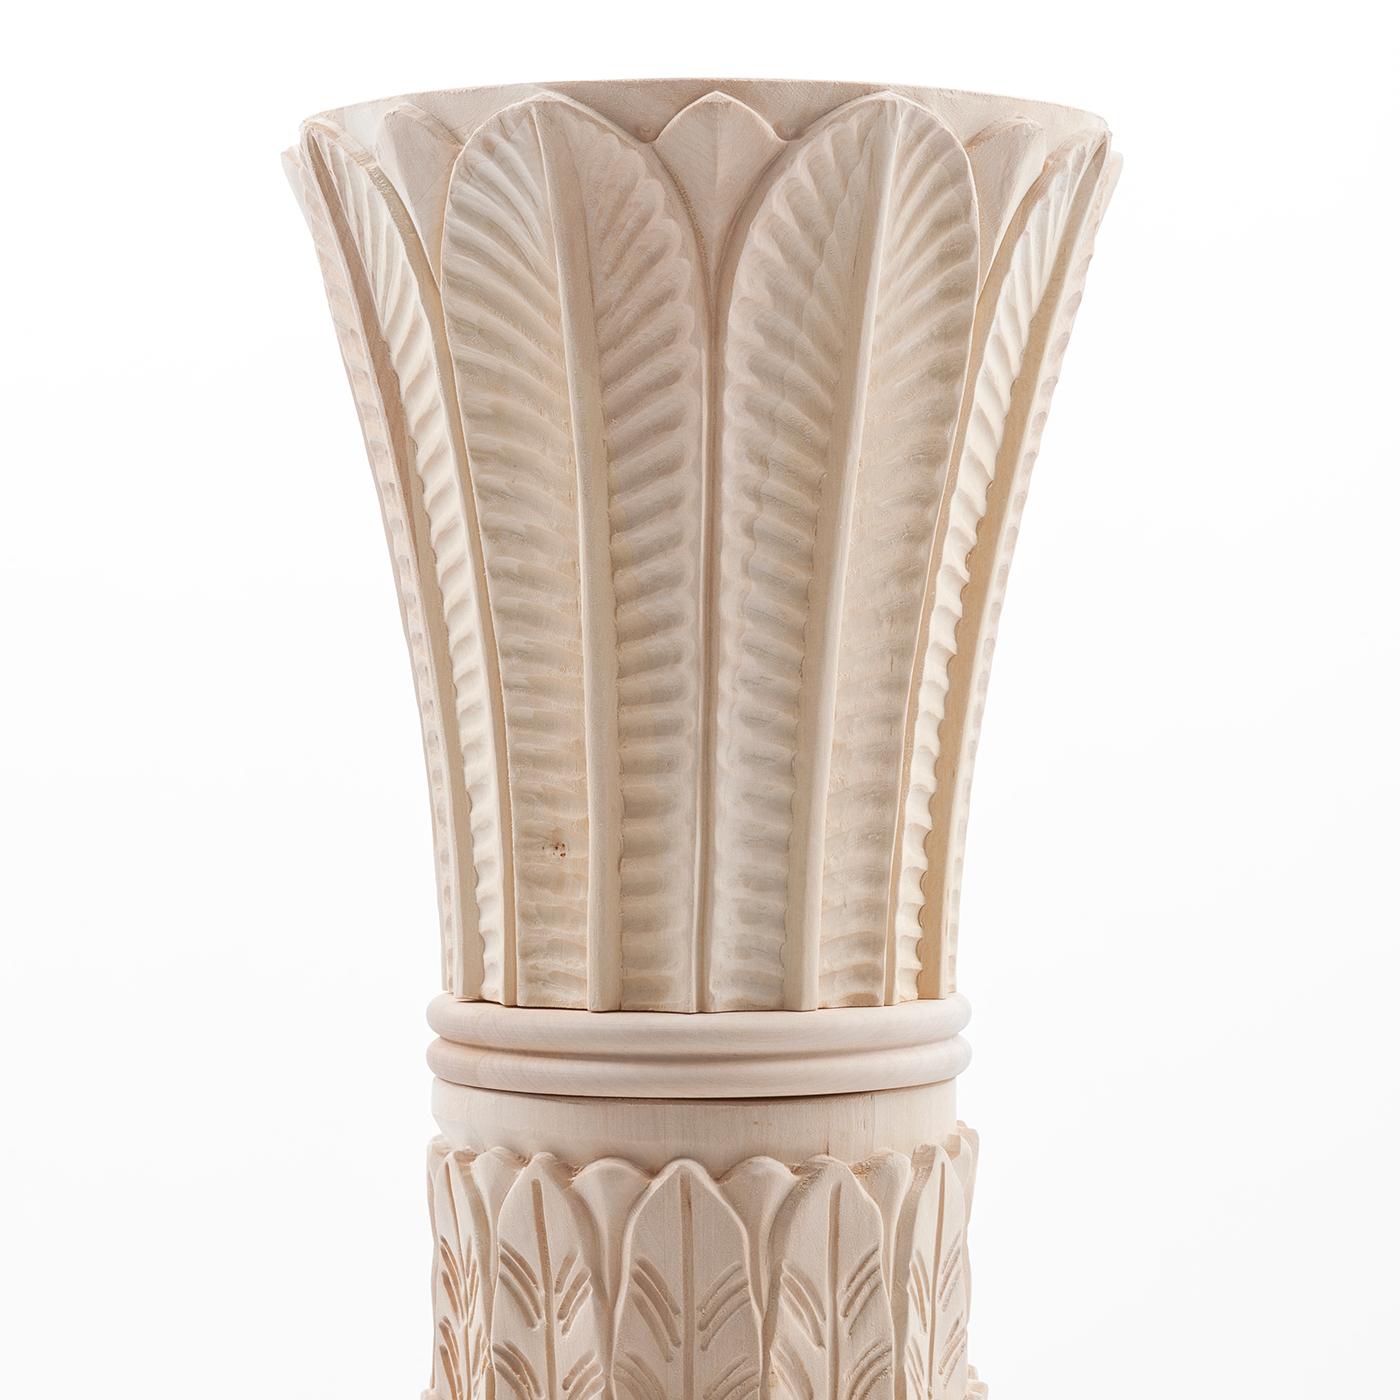 Mélange extraordinaire de techniques modernes et de l'ancienne tradition de la sculpture, cette colonne décorative est fabriquée à la main selon un processus méticuleux. Fabriquée en bois massif beige, la silhouette délicate et raffinée s'inspire